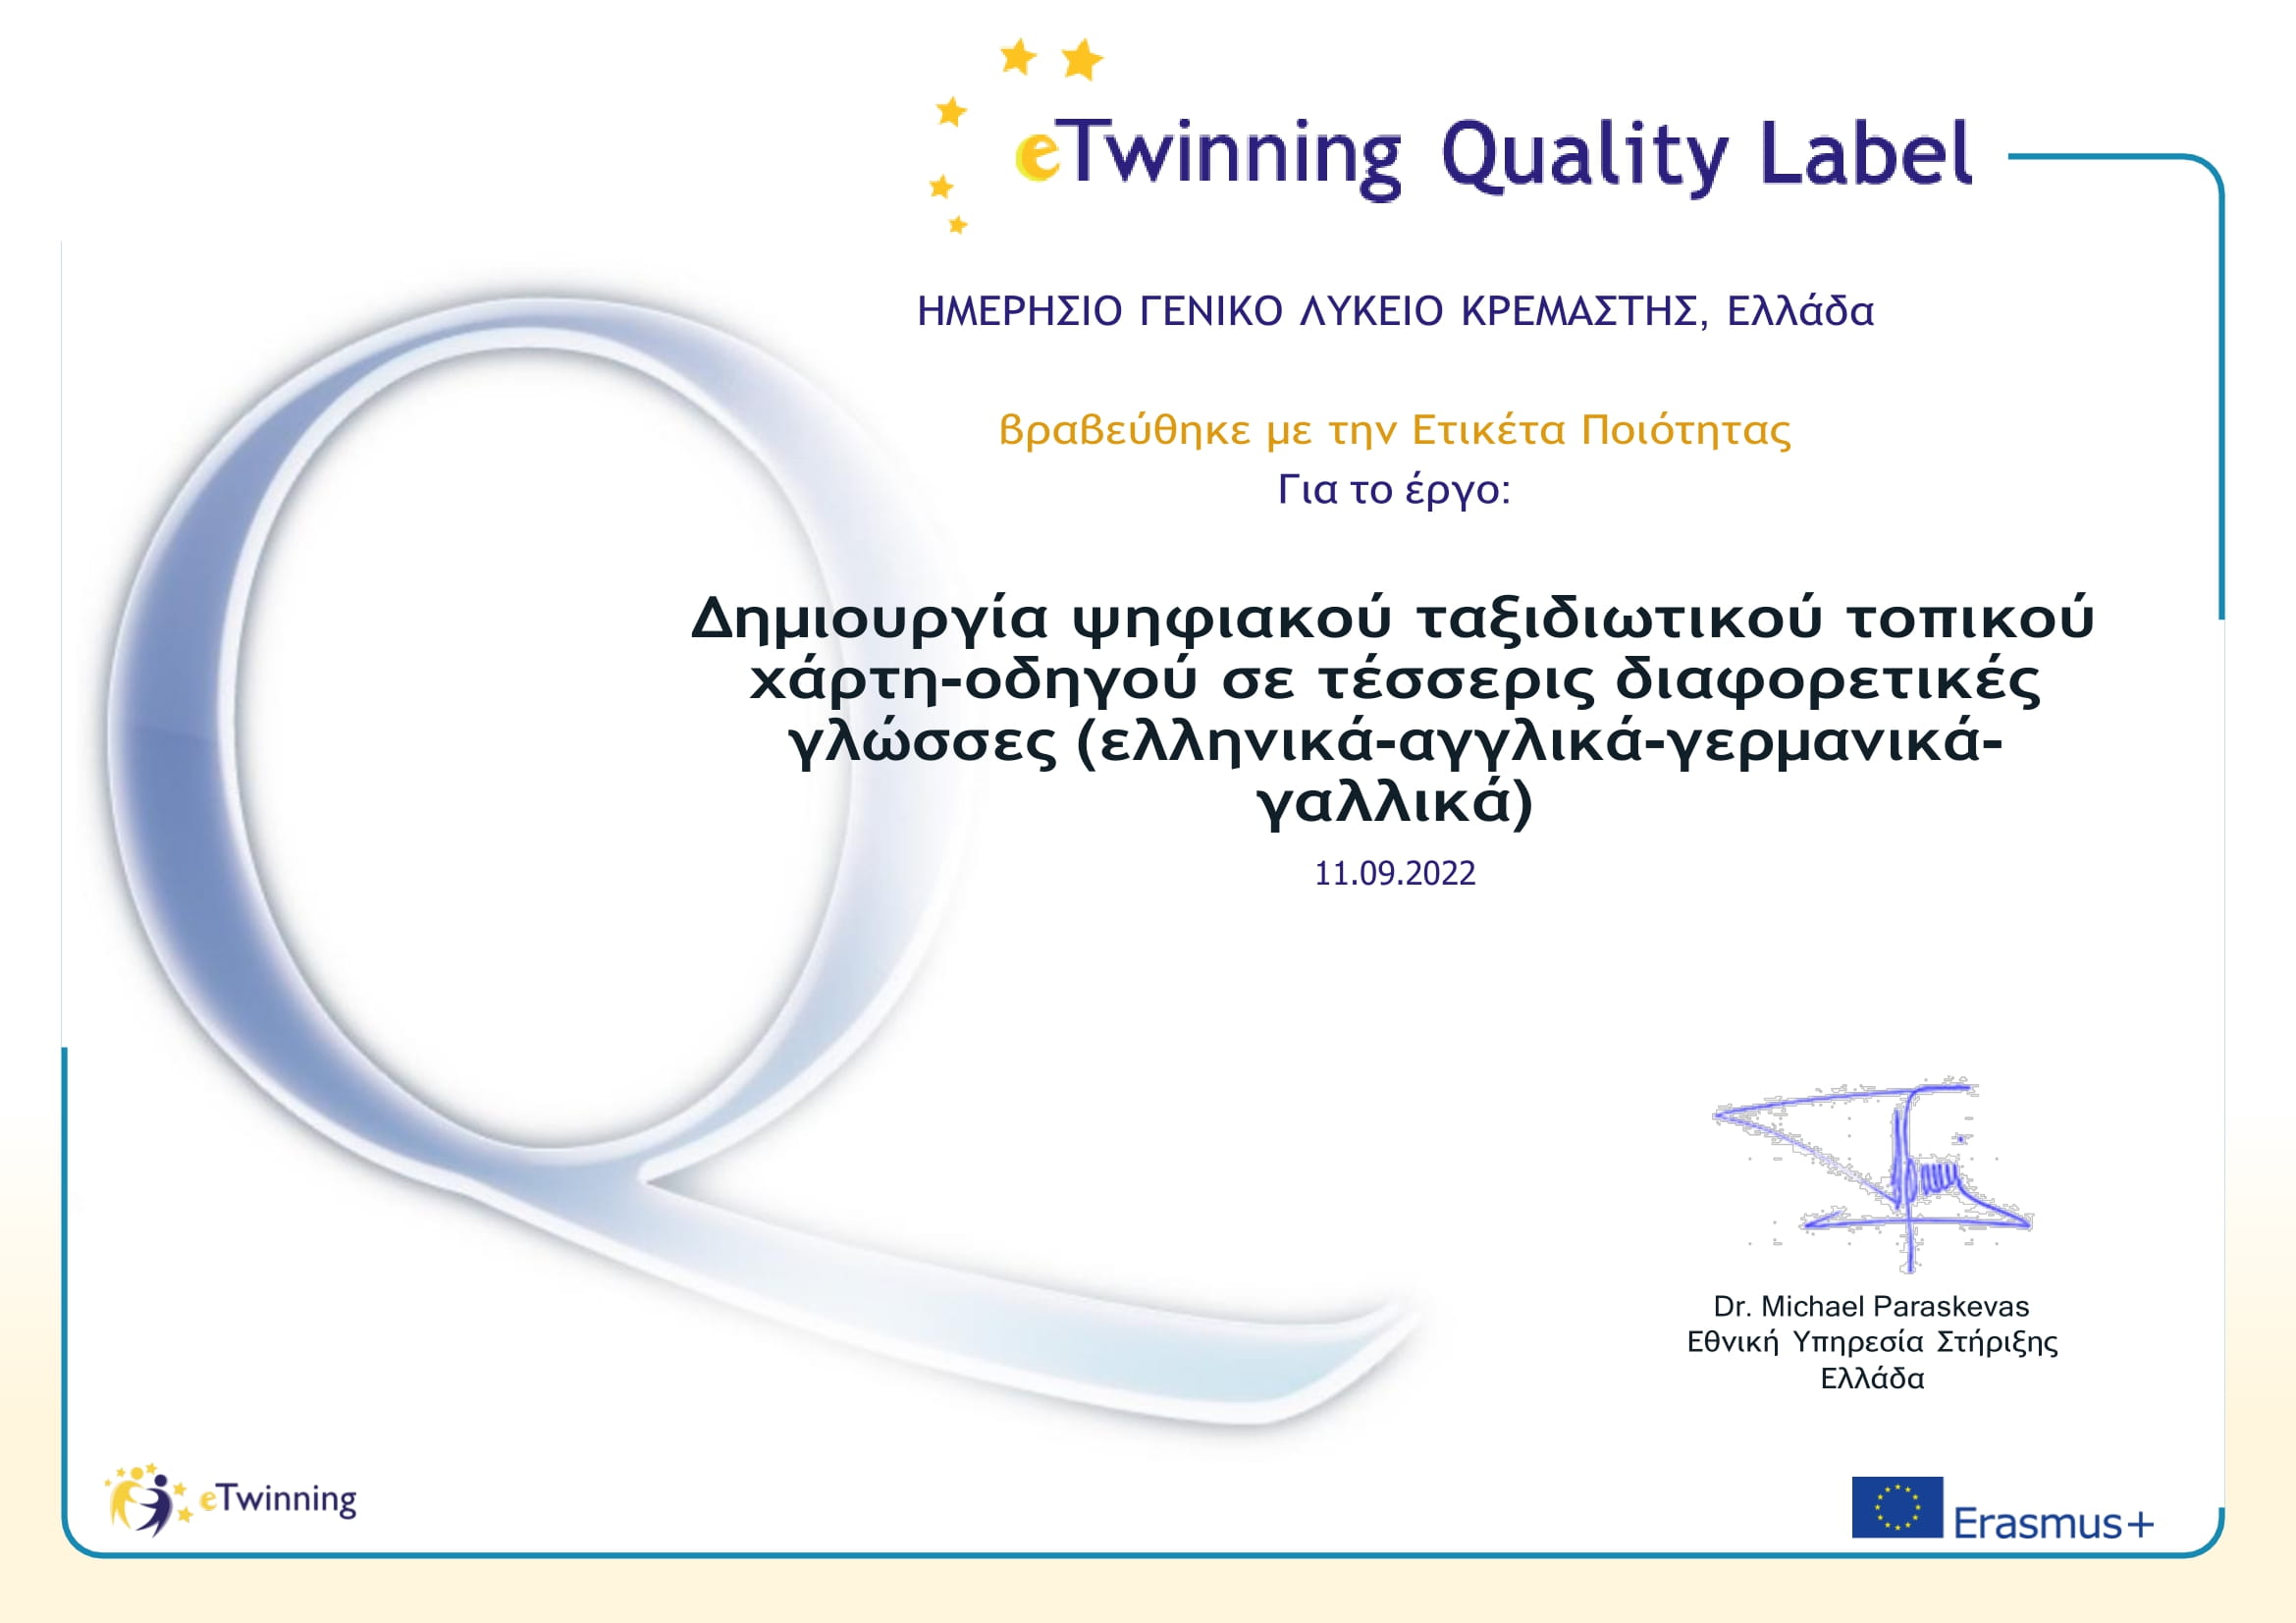 Βράβευση του Λυκείου Κρεμαστής με την Εθνική Ετικέτα Ποιότητας eTwinning (eTwinnning Quality Label)